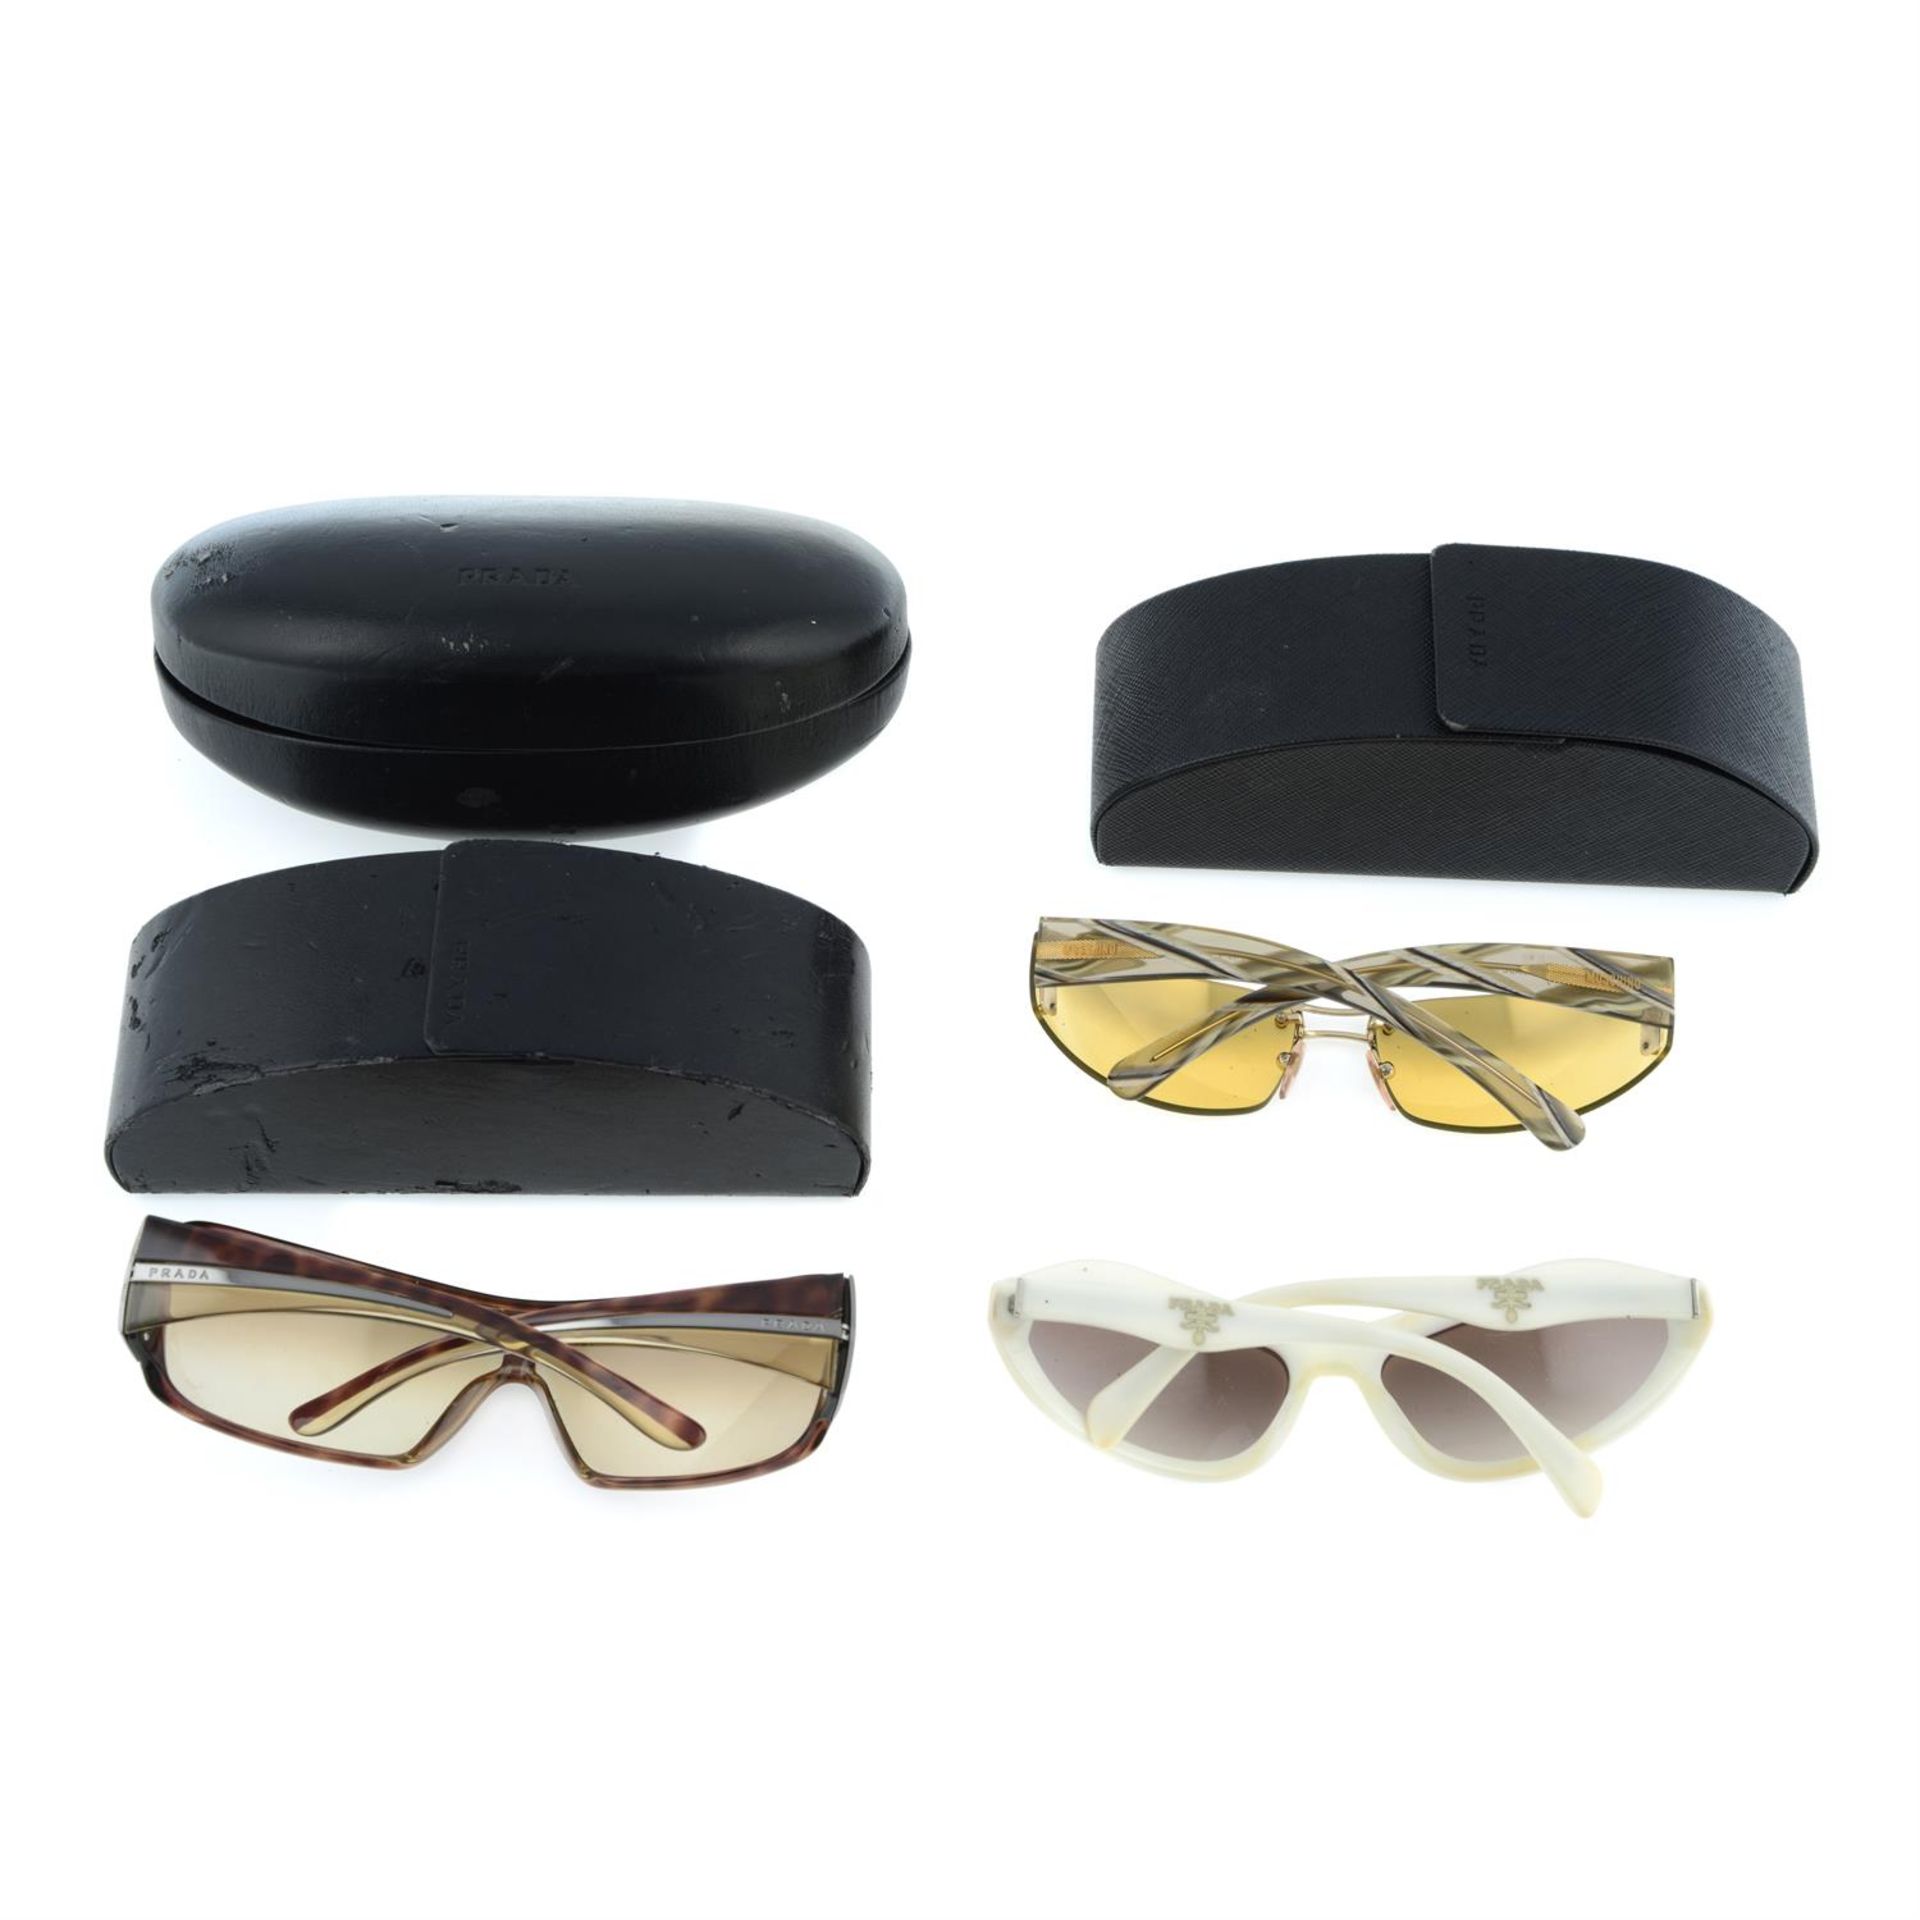 PRADA - three pairs of sunglasses. - Image 2 of 2